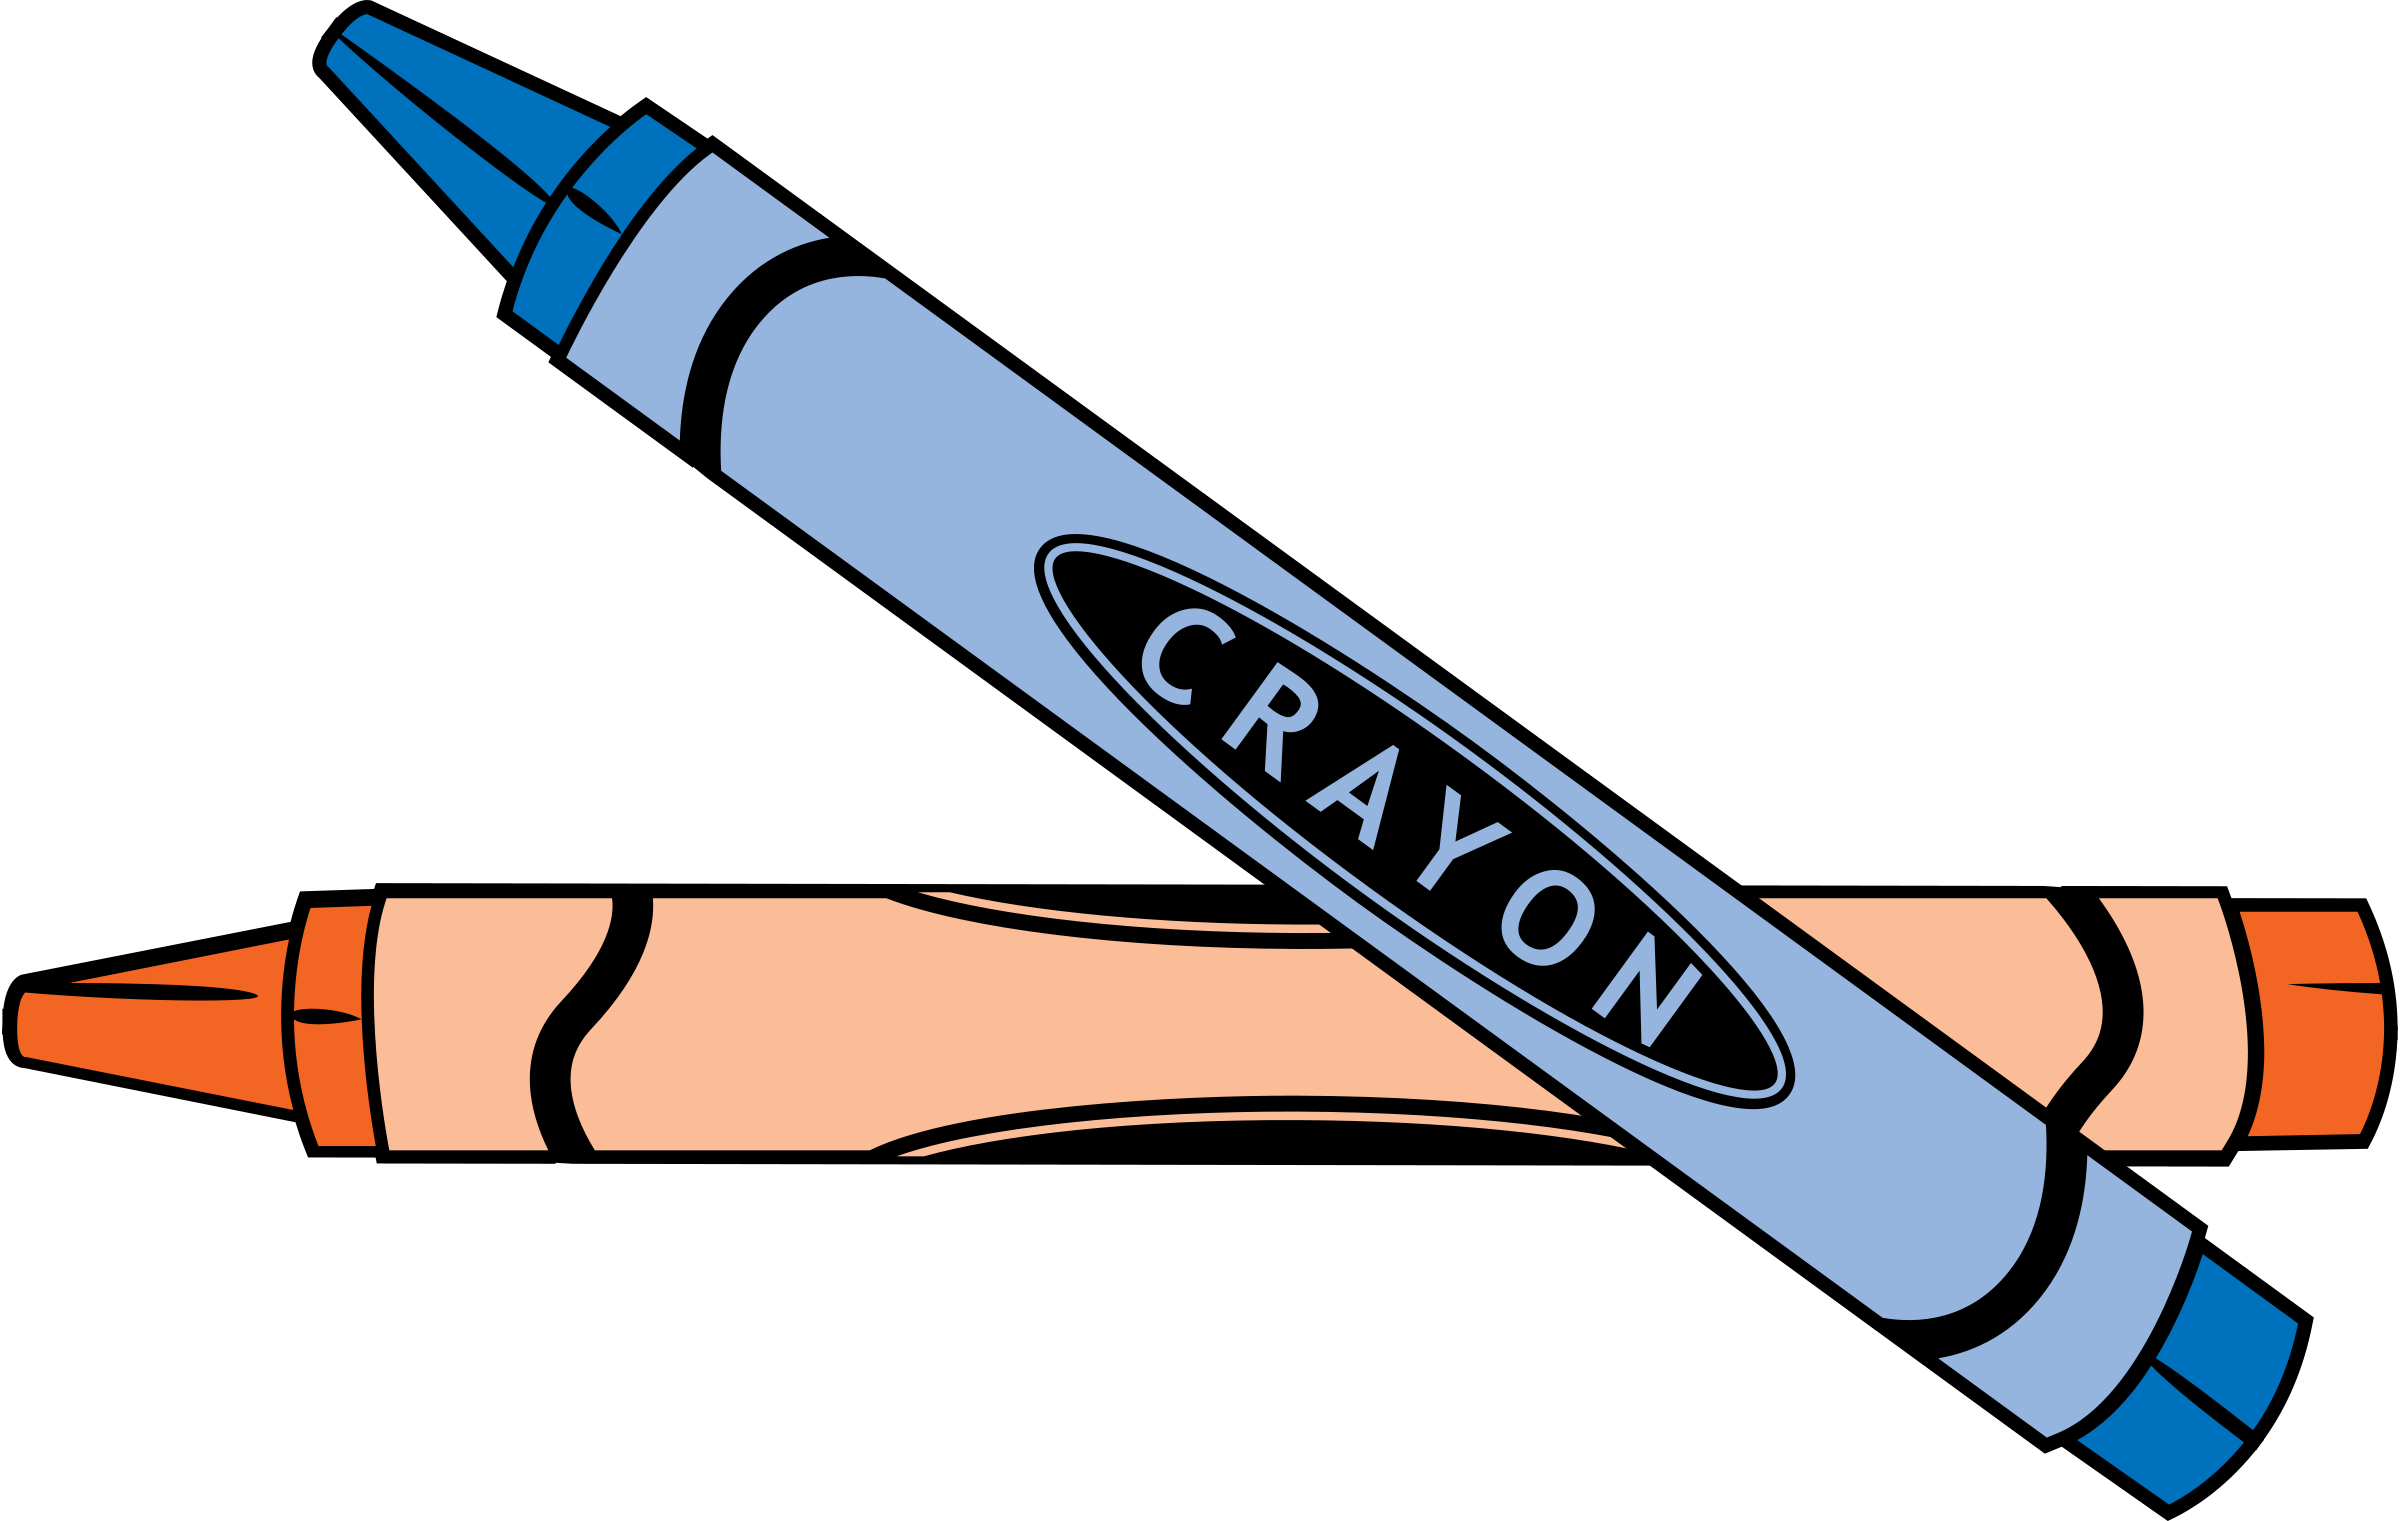 Crayola crayon clipart